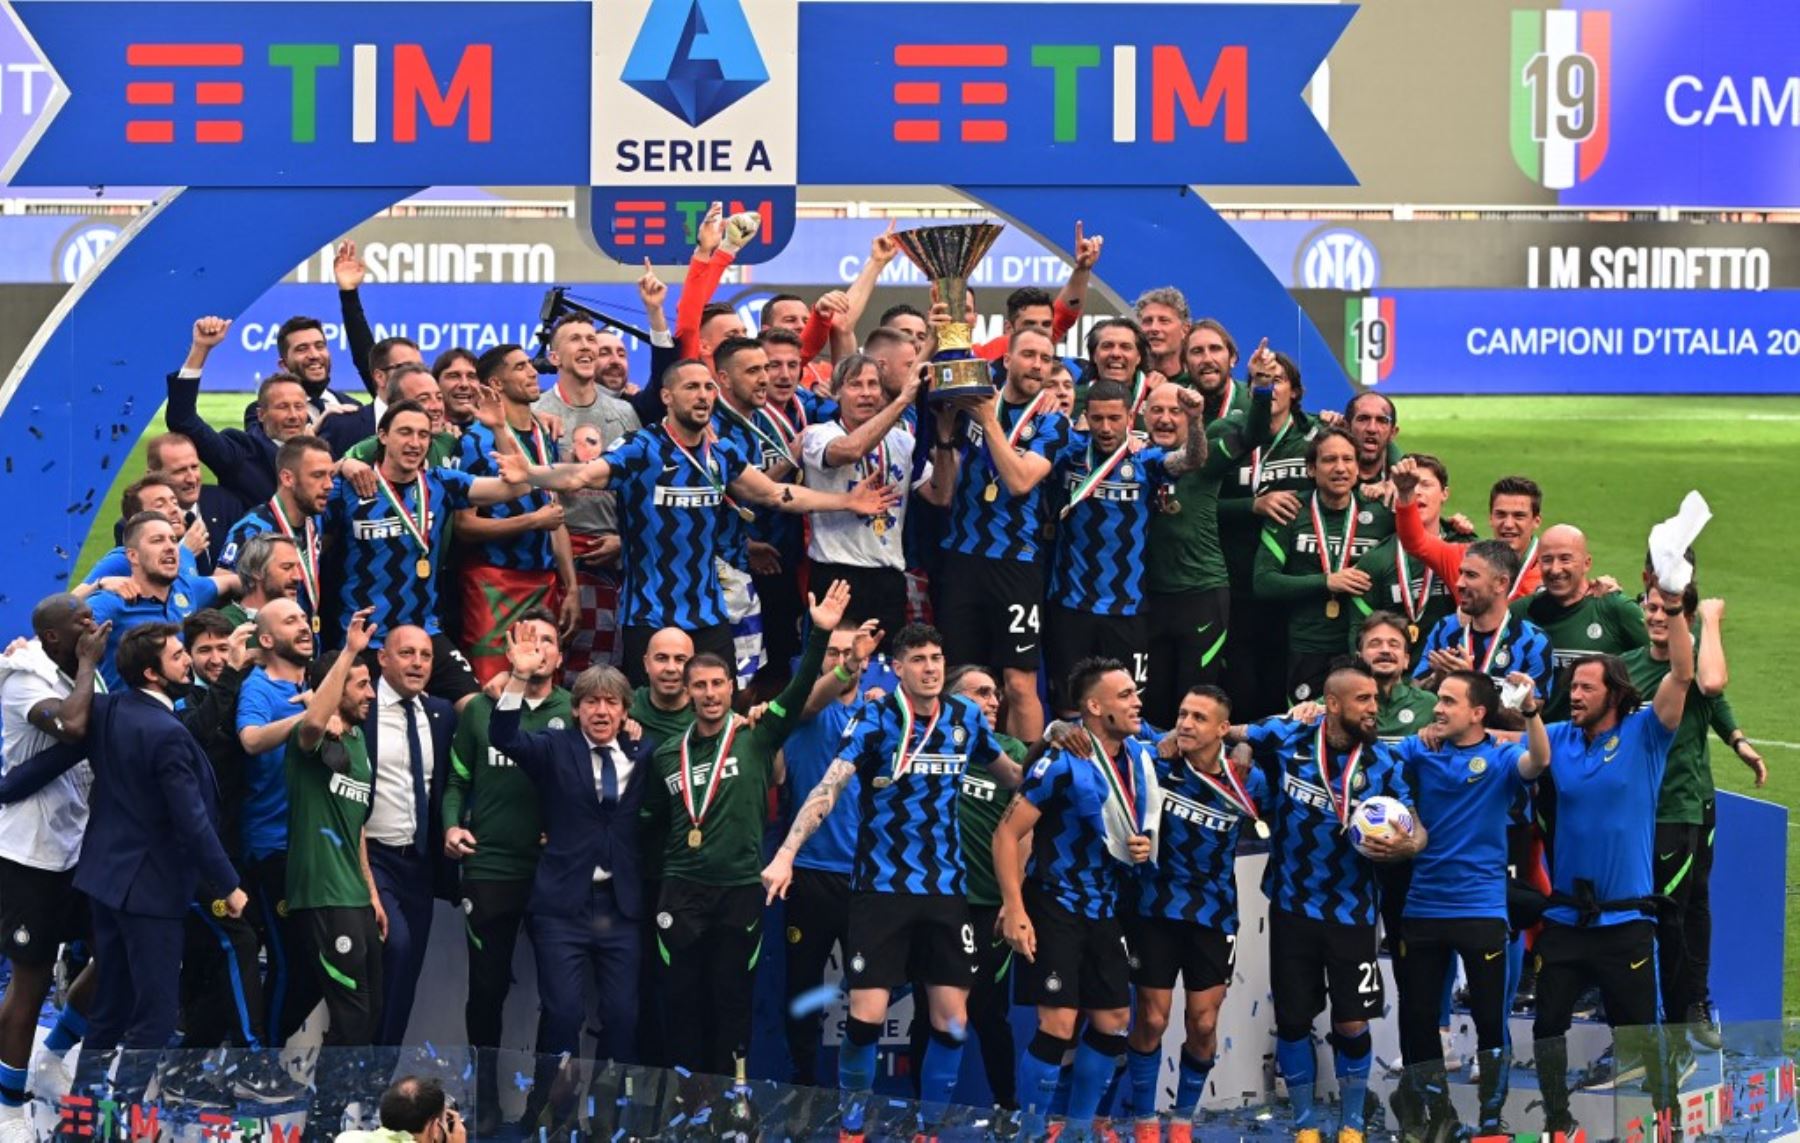 El Inter celebró con su hinchada su título 19